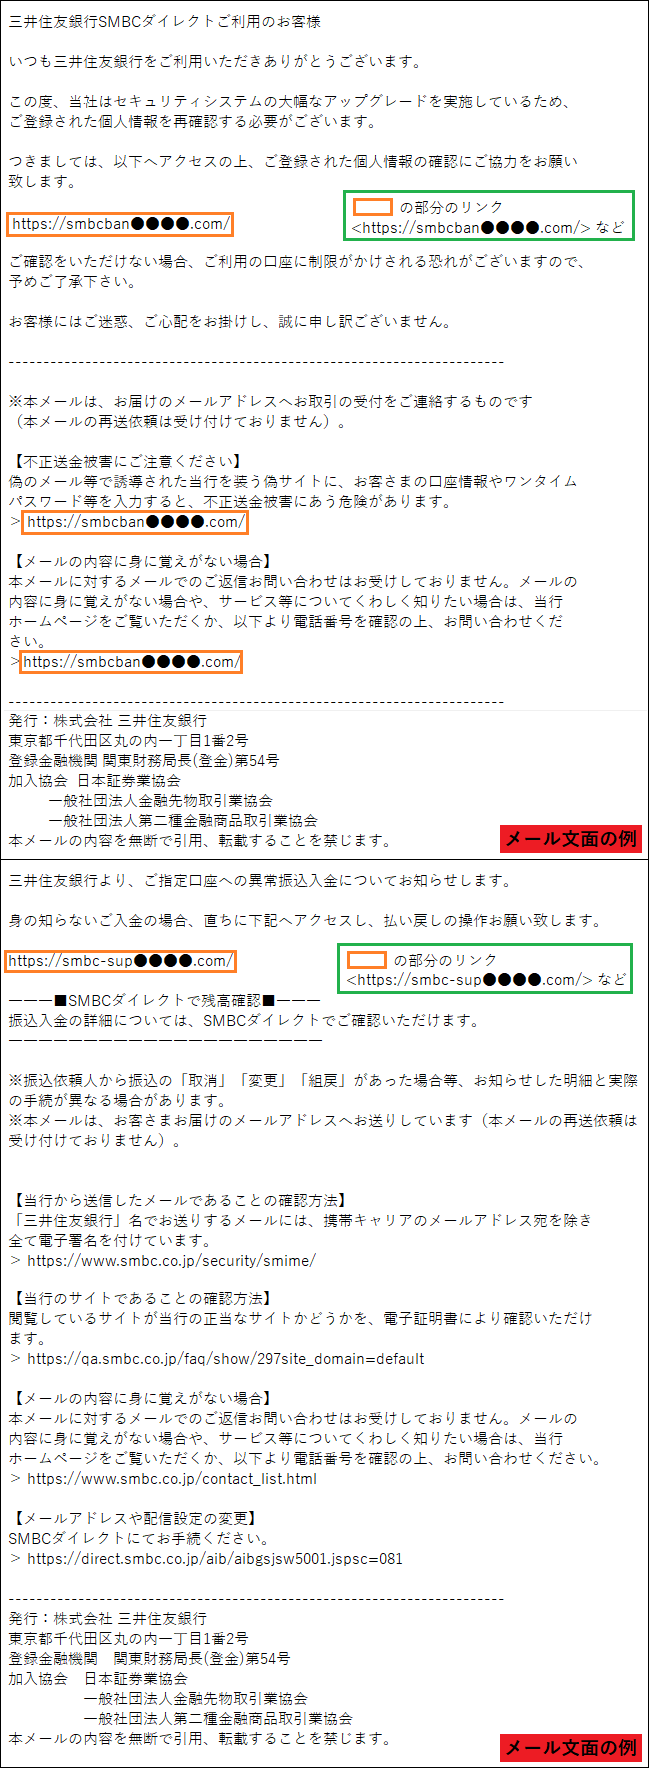 三井住友銀行をかたるフィッシング (2021/11/10)